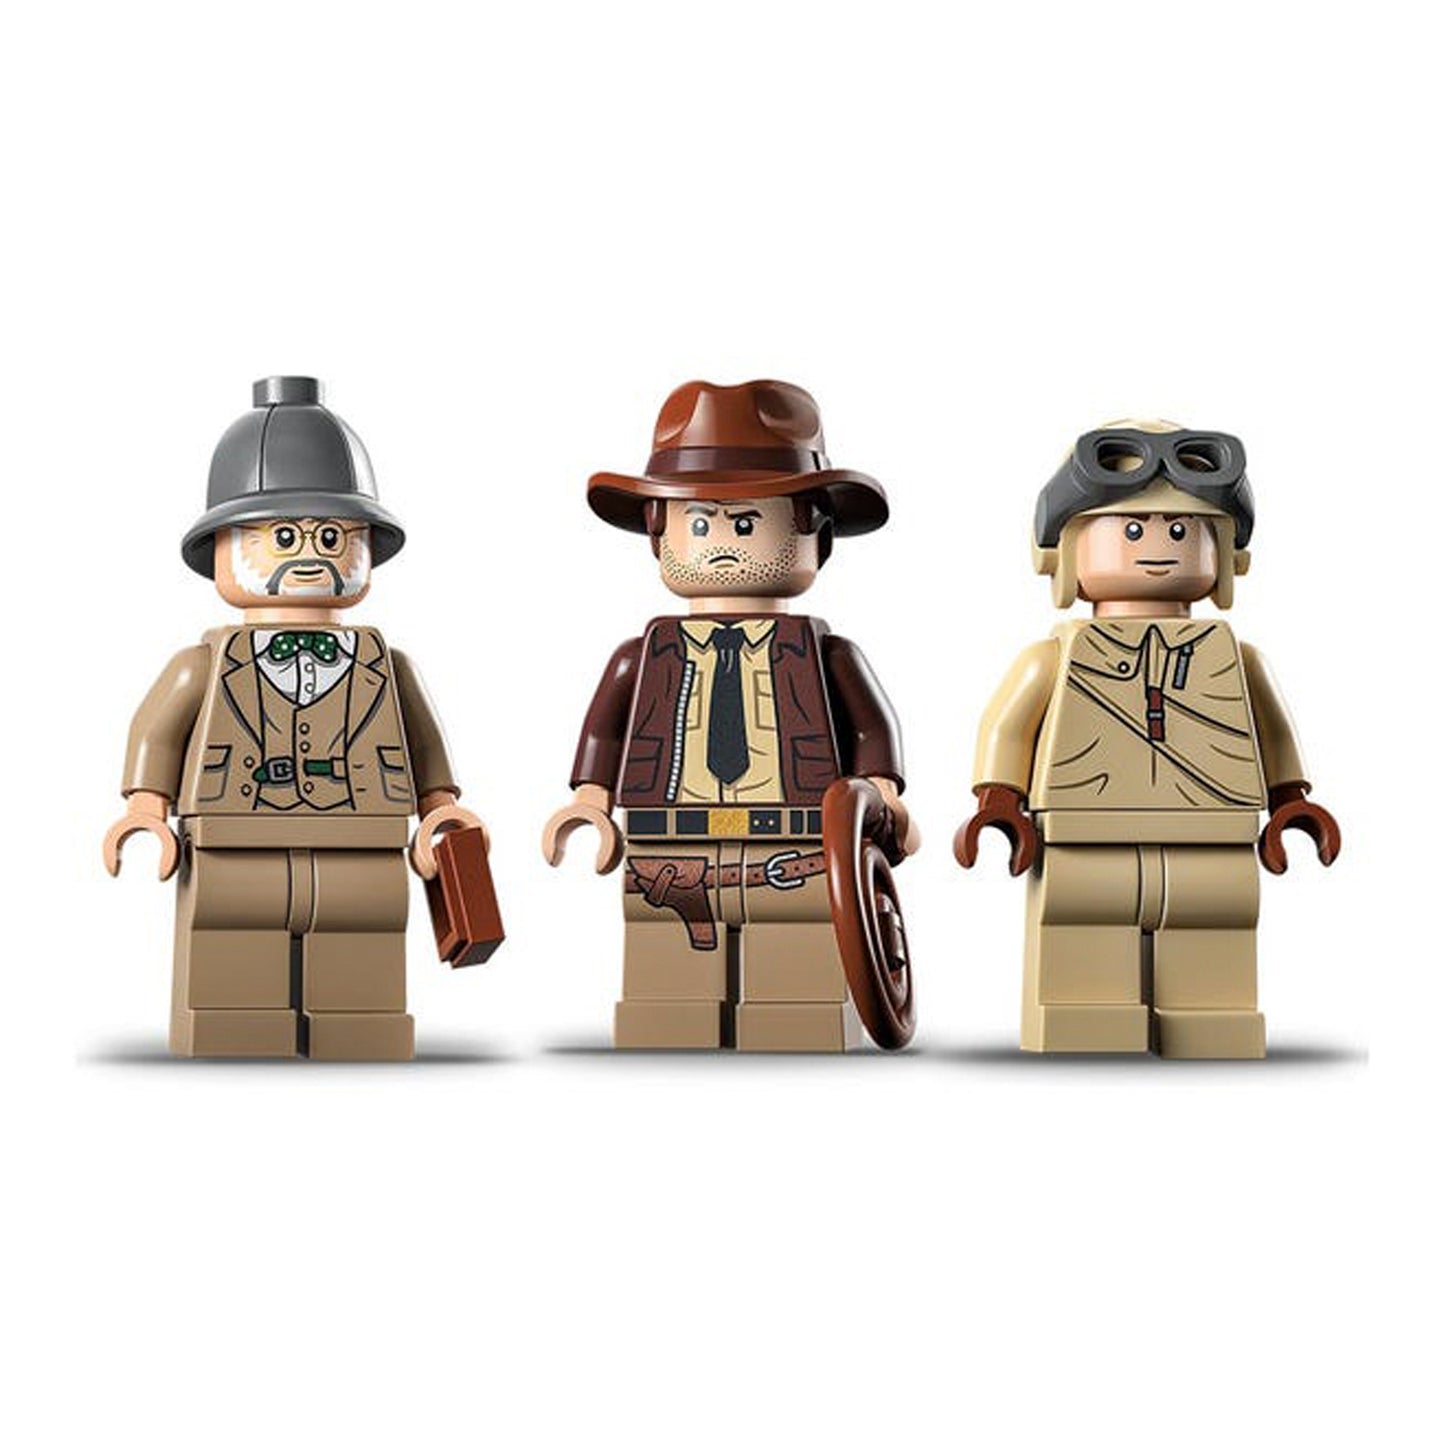 Lego Indiana Jones Persecución Del Caza 77012 - Crazygames